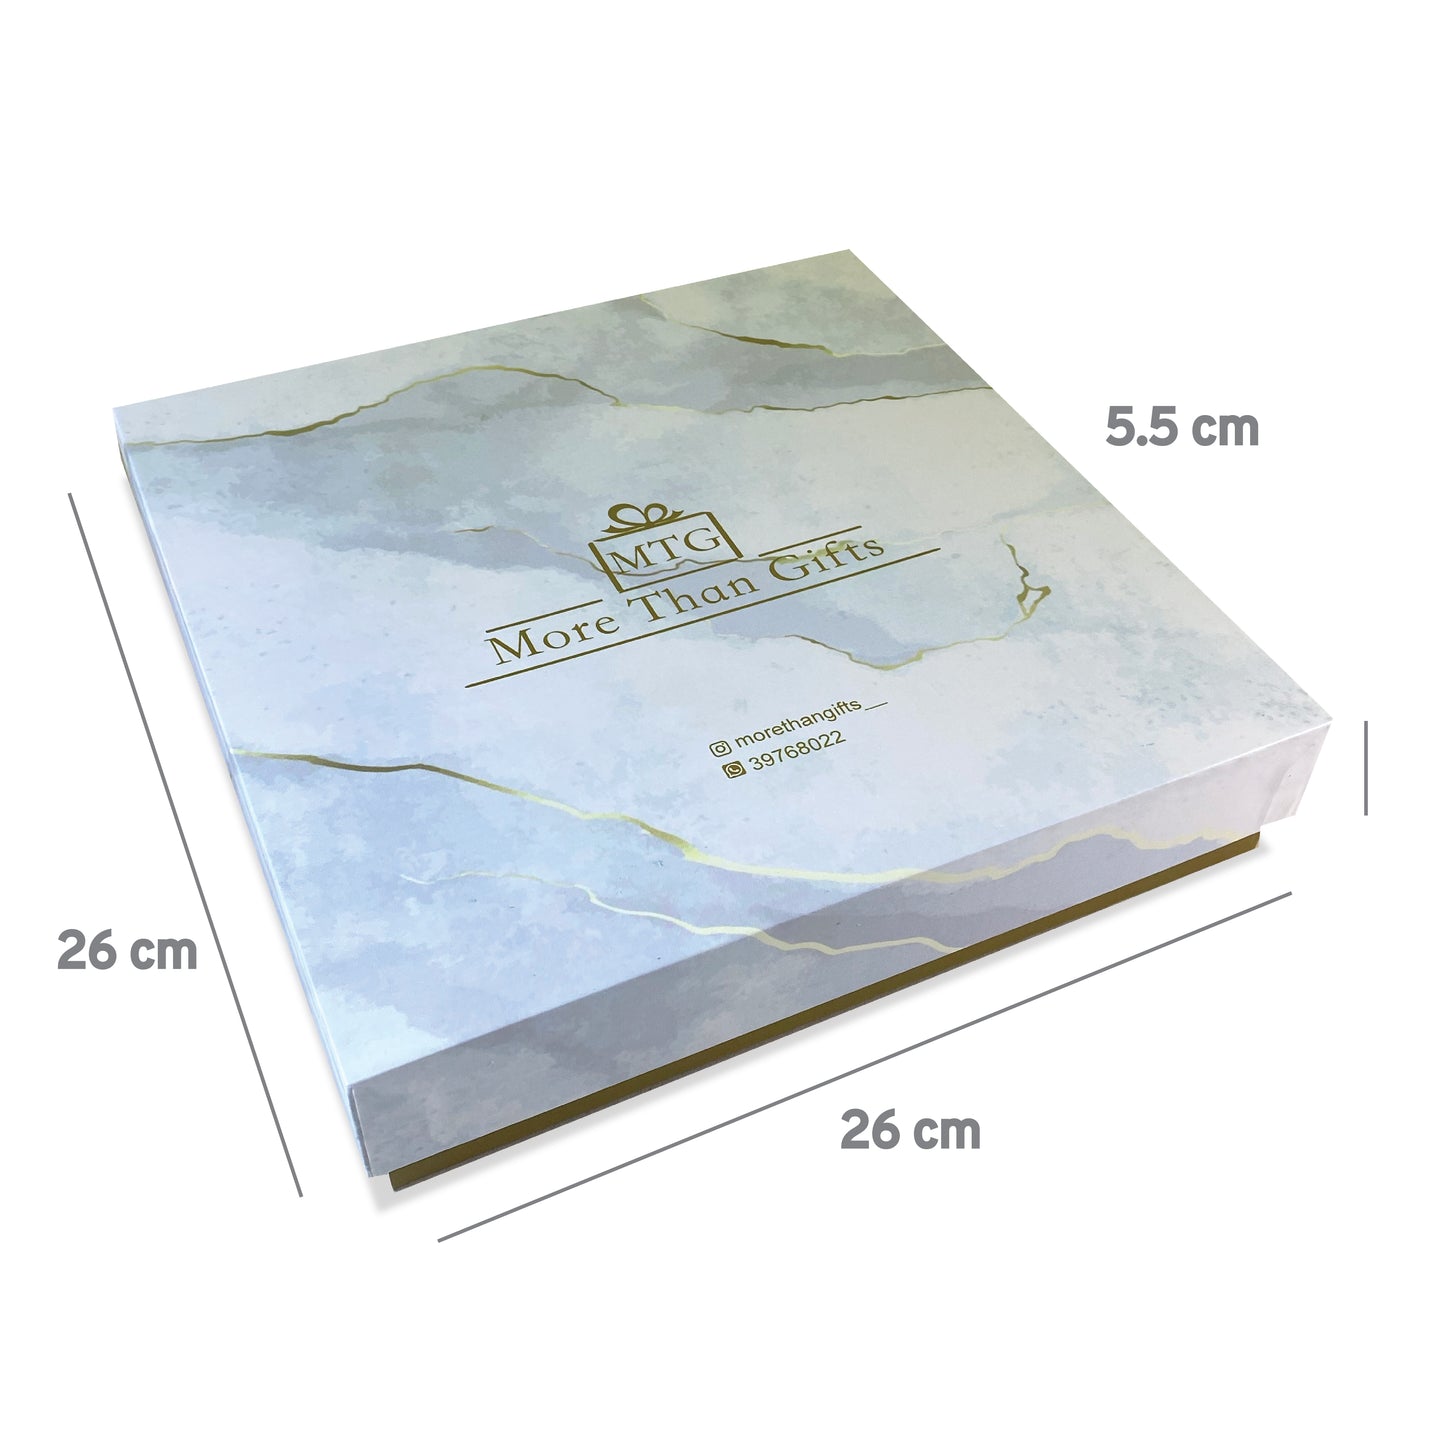 RIGID BOX 26x26x5.5 cm